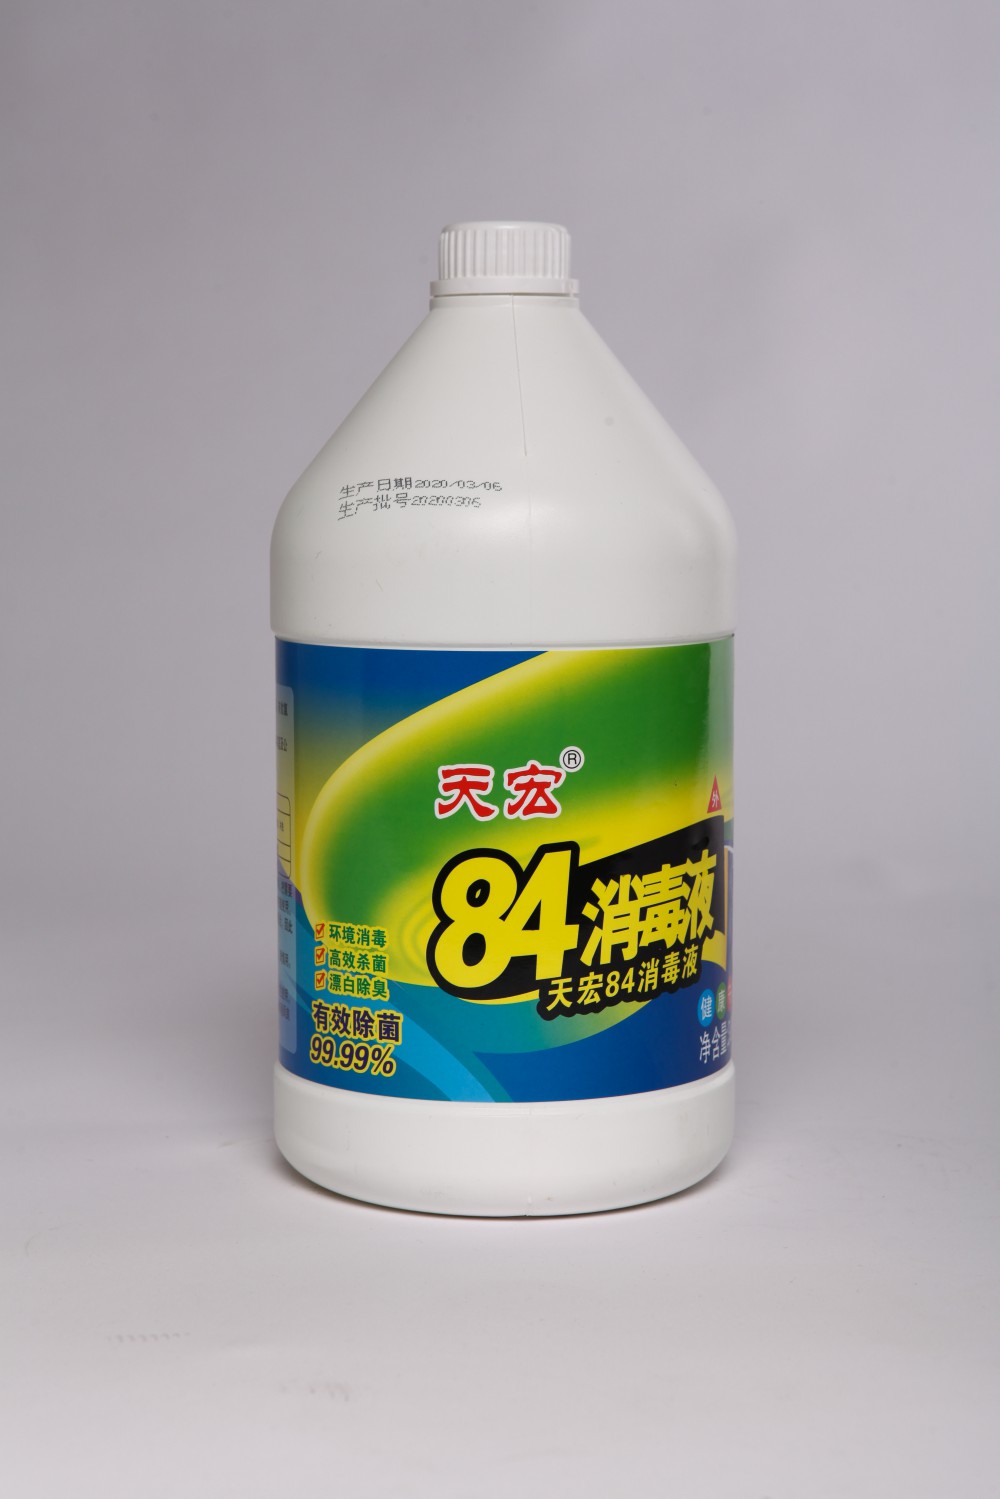 天宏84消毒液 3Kg有效除菌99.99%